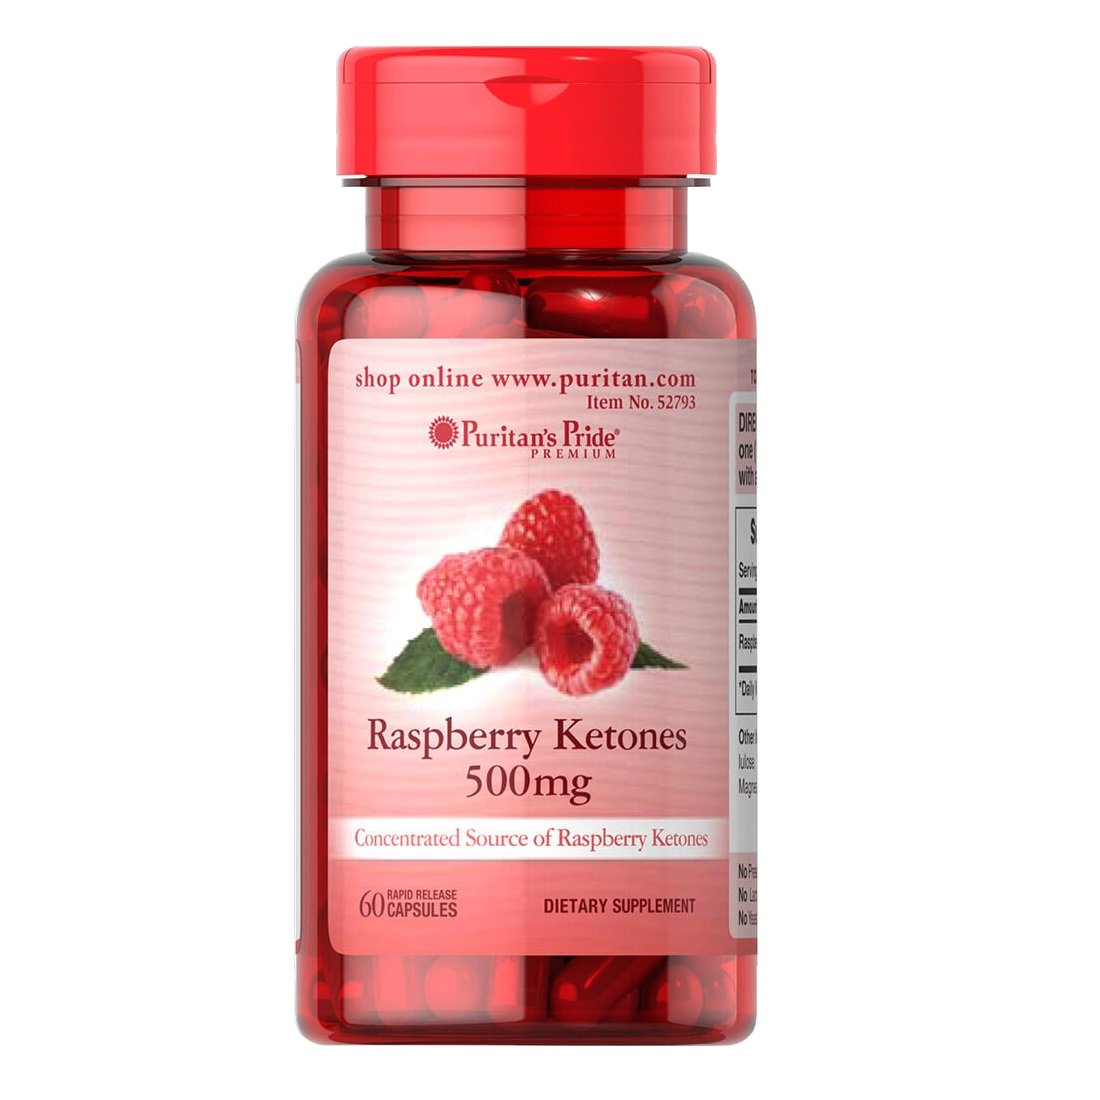 Натуральная добавка Puritan's Pride Raspberry Ketones 500 mg, 60 капсул,  мл, Puritan's Pride. Hатуральные продукты. Поддержание здоровья 